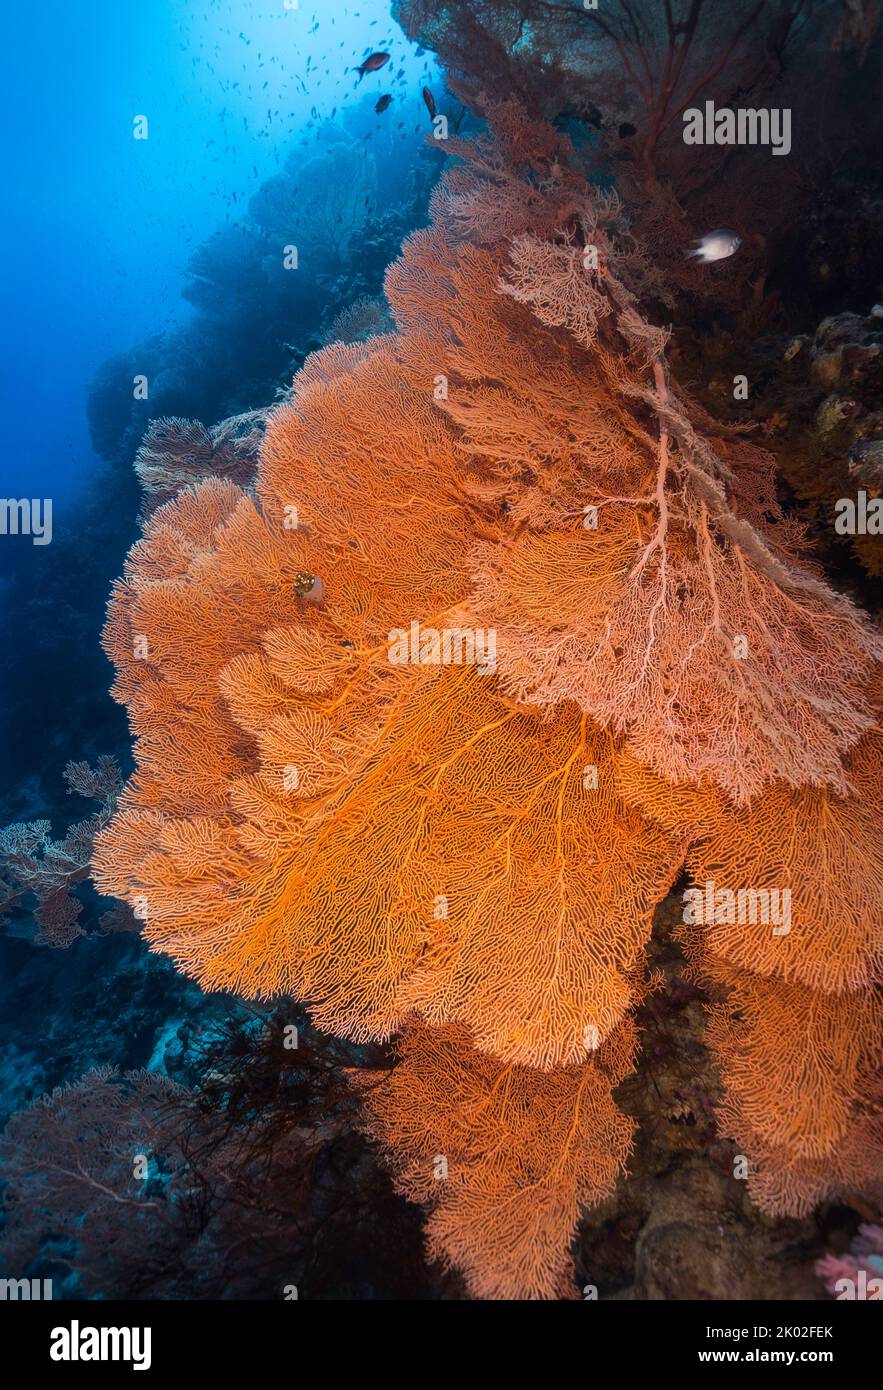 Beaucoup de ventilateurs géants de la mer (Anella mollis) poussant sur un mur dans la profondeur avec belle coloration orange vif Banque D'Images